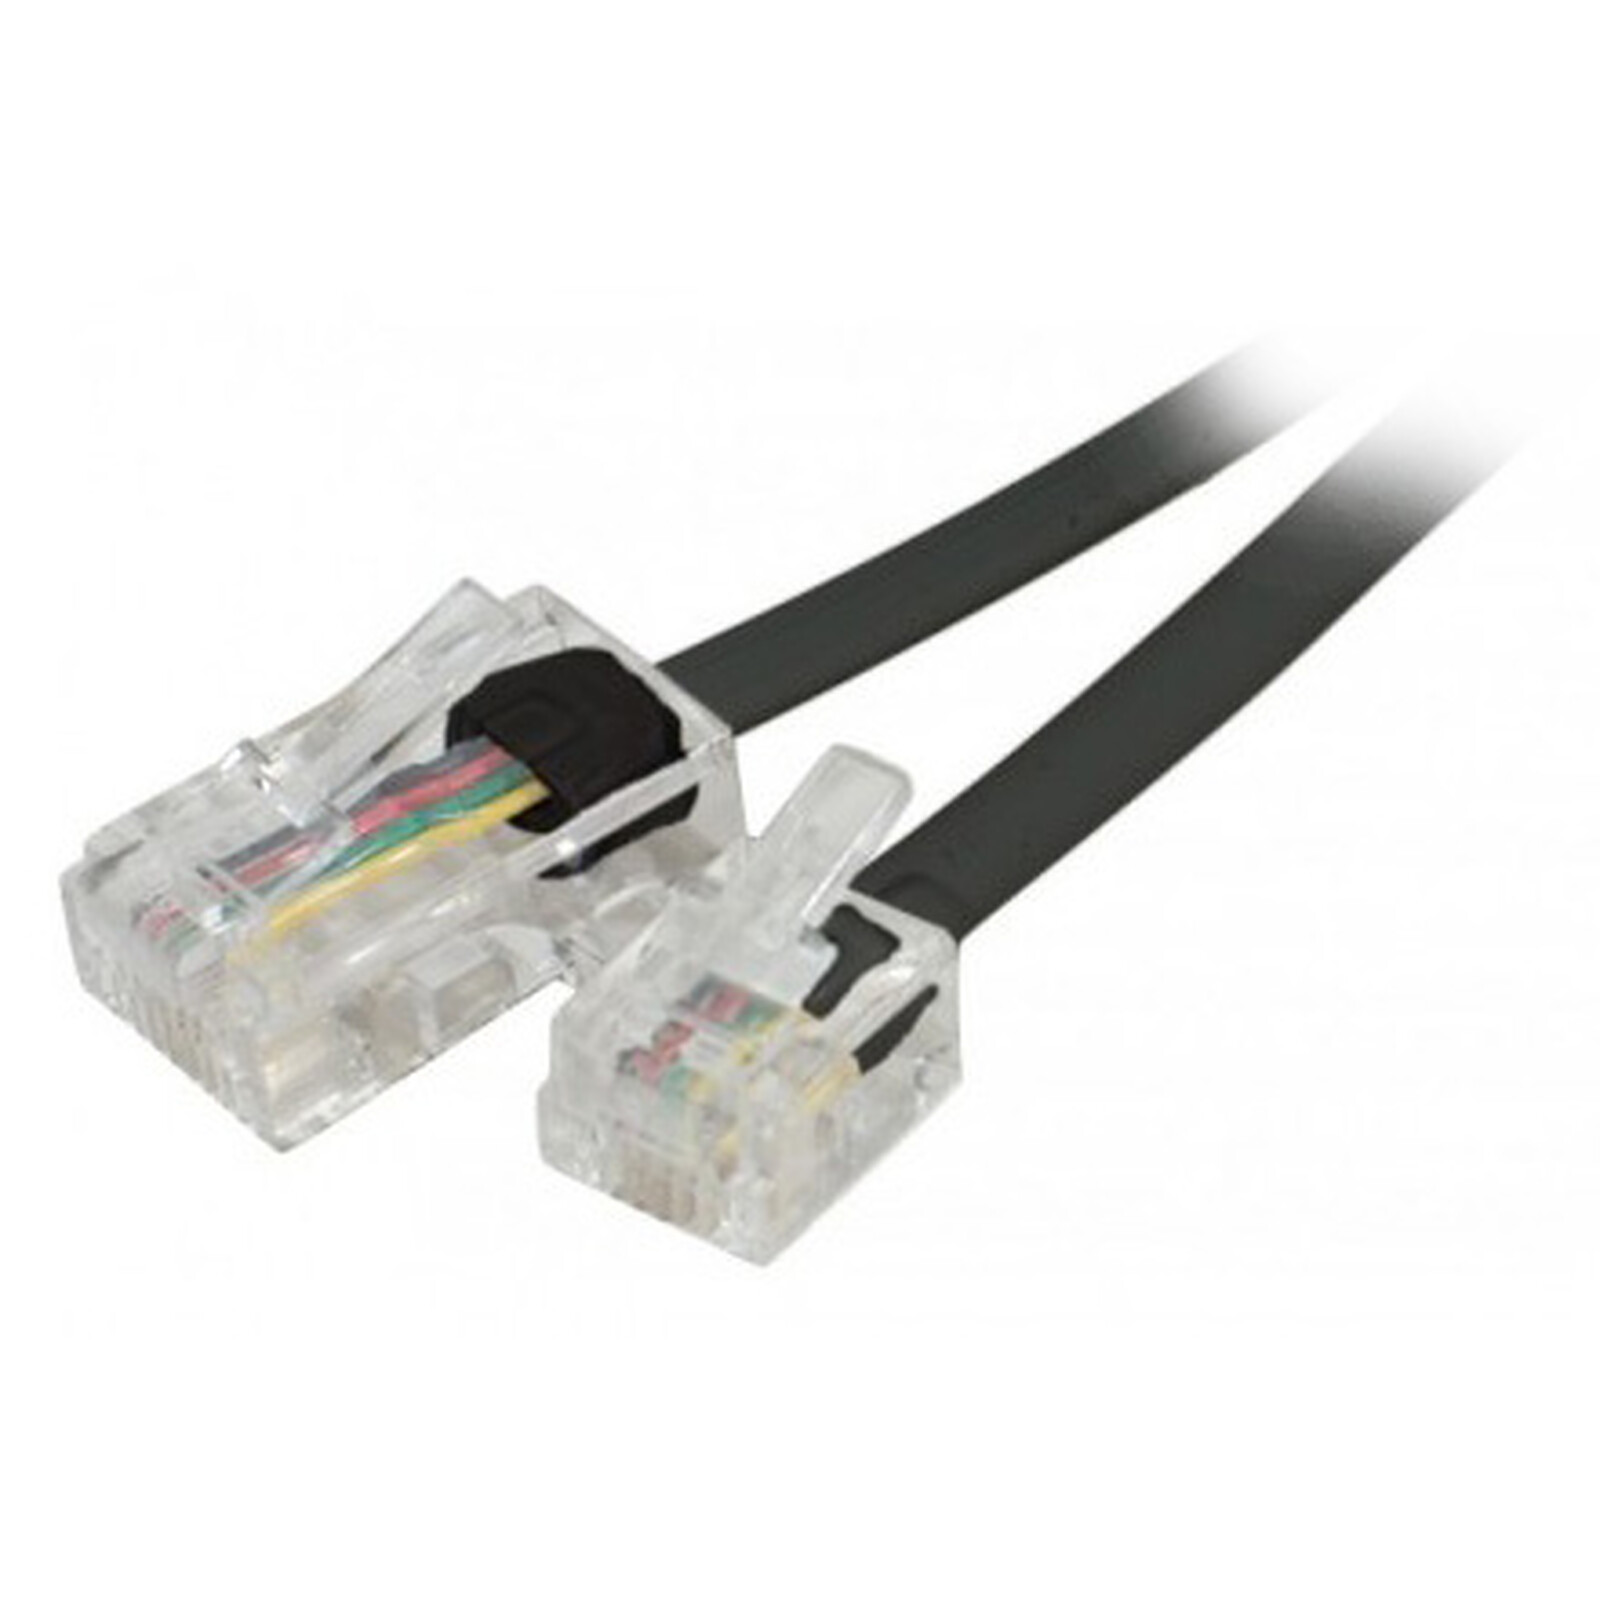 Câble adaptateur RJ11 mâle / RJ45 mâle (2 mètres) - Connectique RJ11 & RJ12  - Garantie 3 ans LDLC